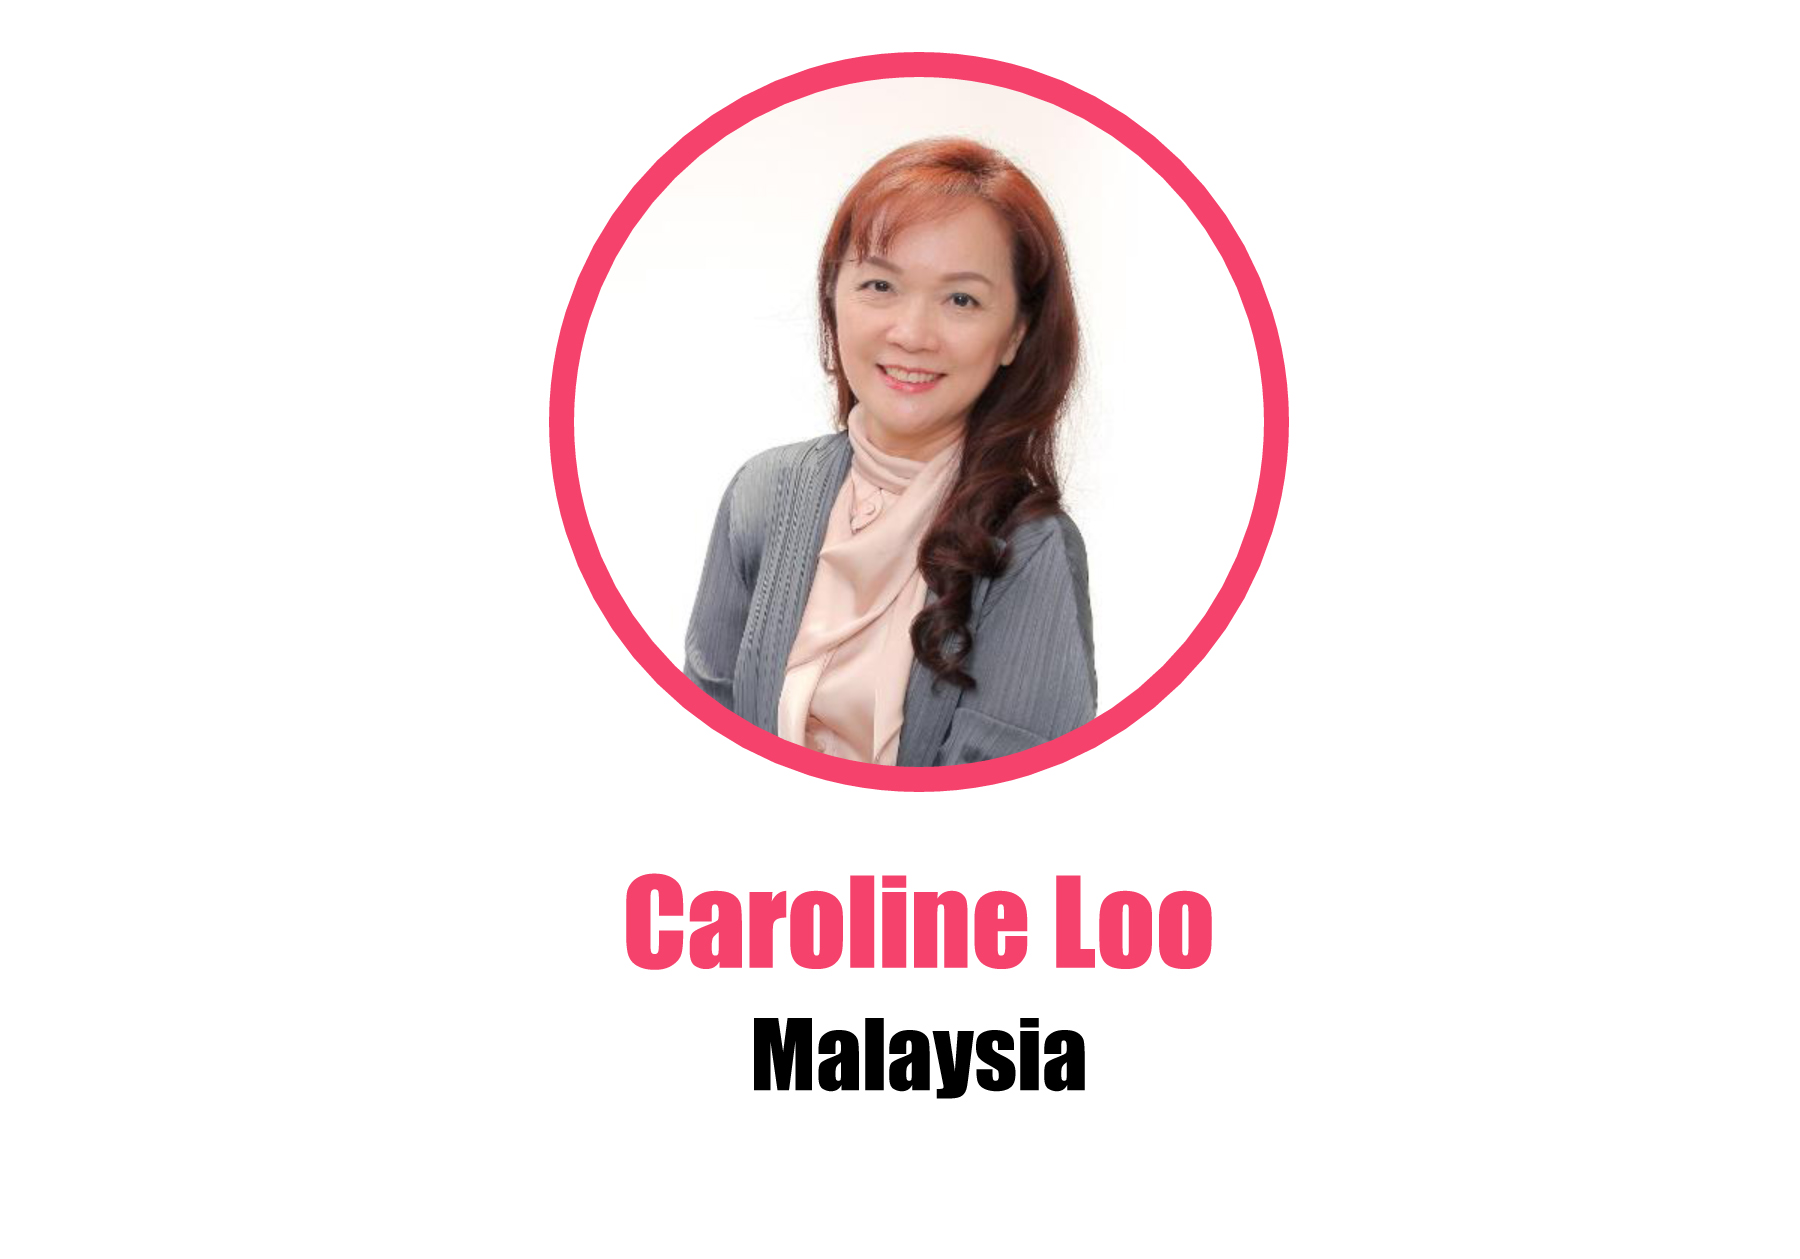 Malaysia_Caroline Loo